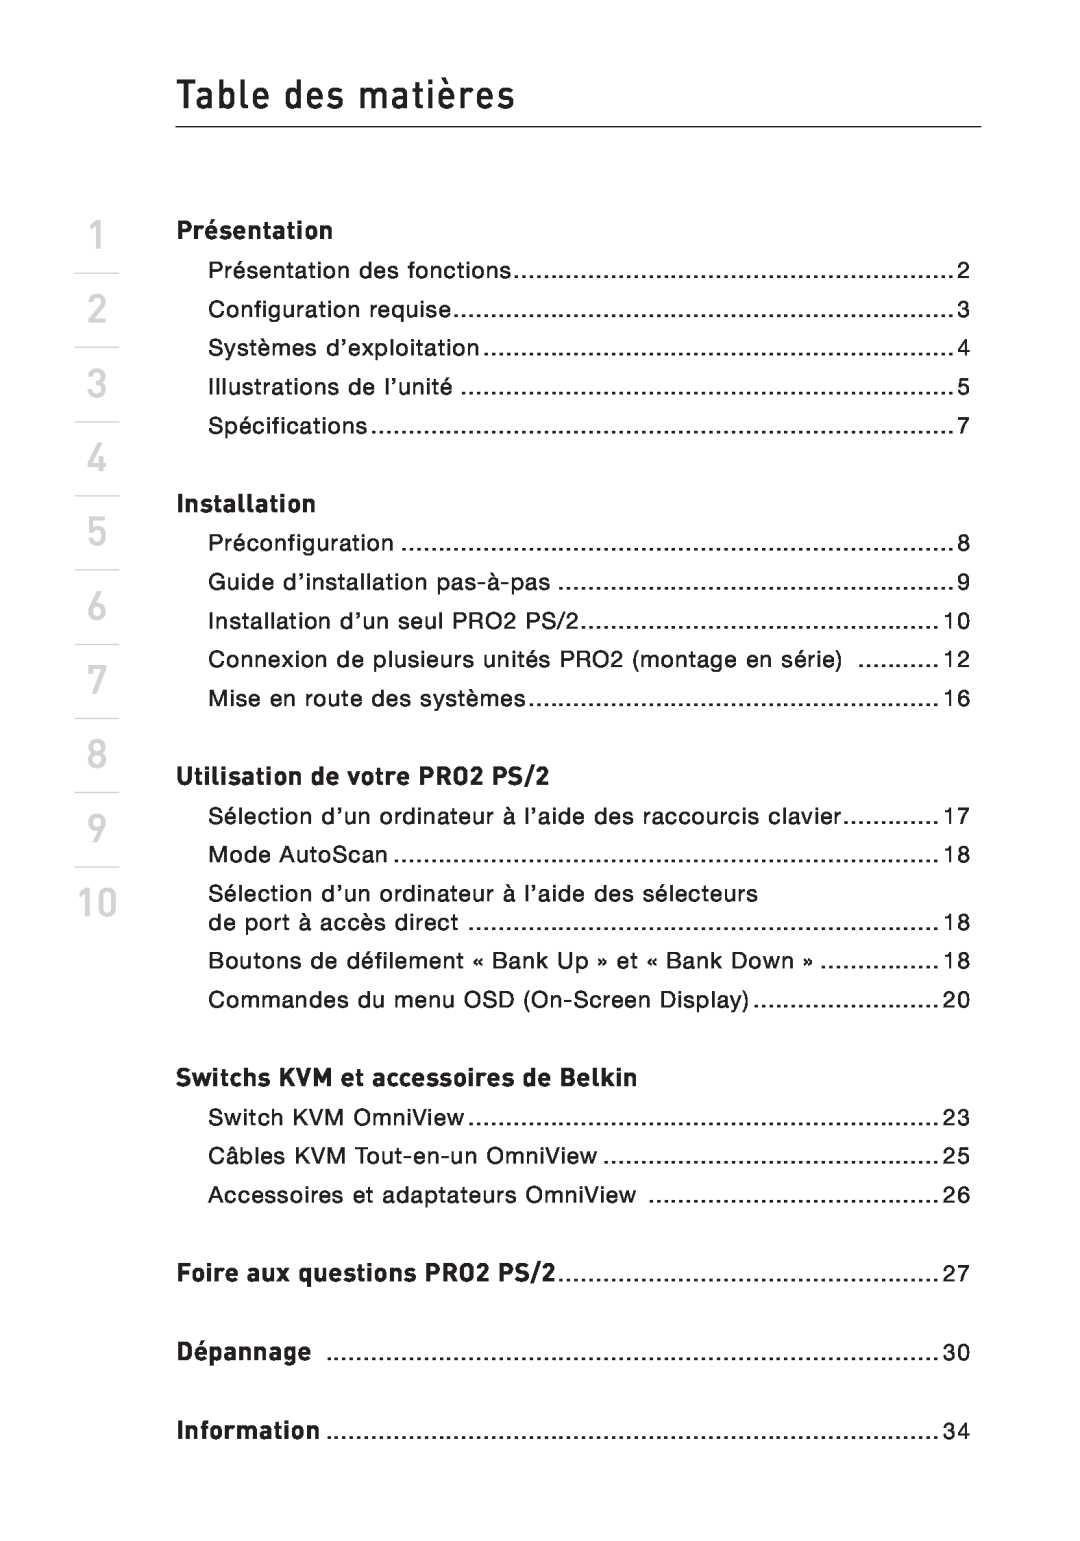 Belkin user manual Table des matières, Présentation, Installation, Utilisation de votre PRO2 PS/2 